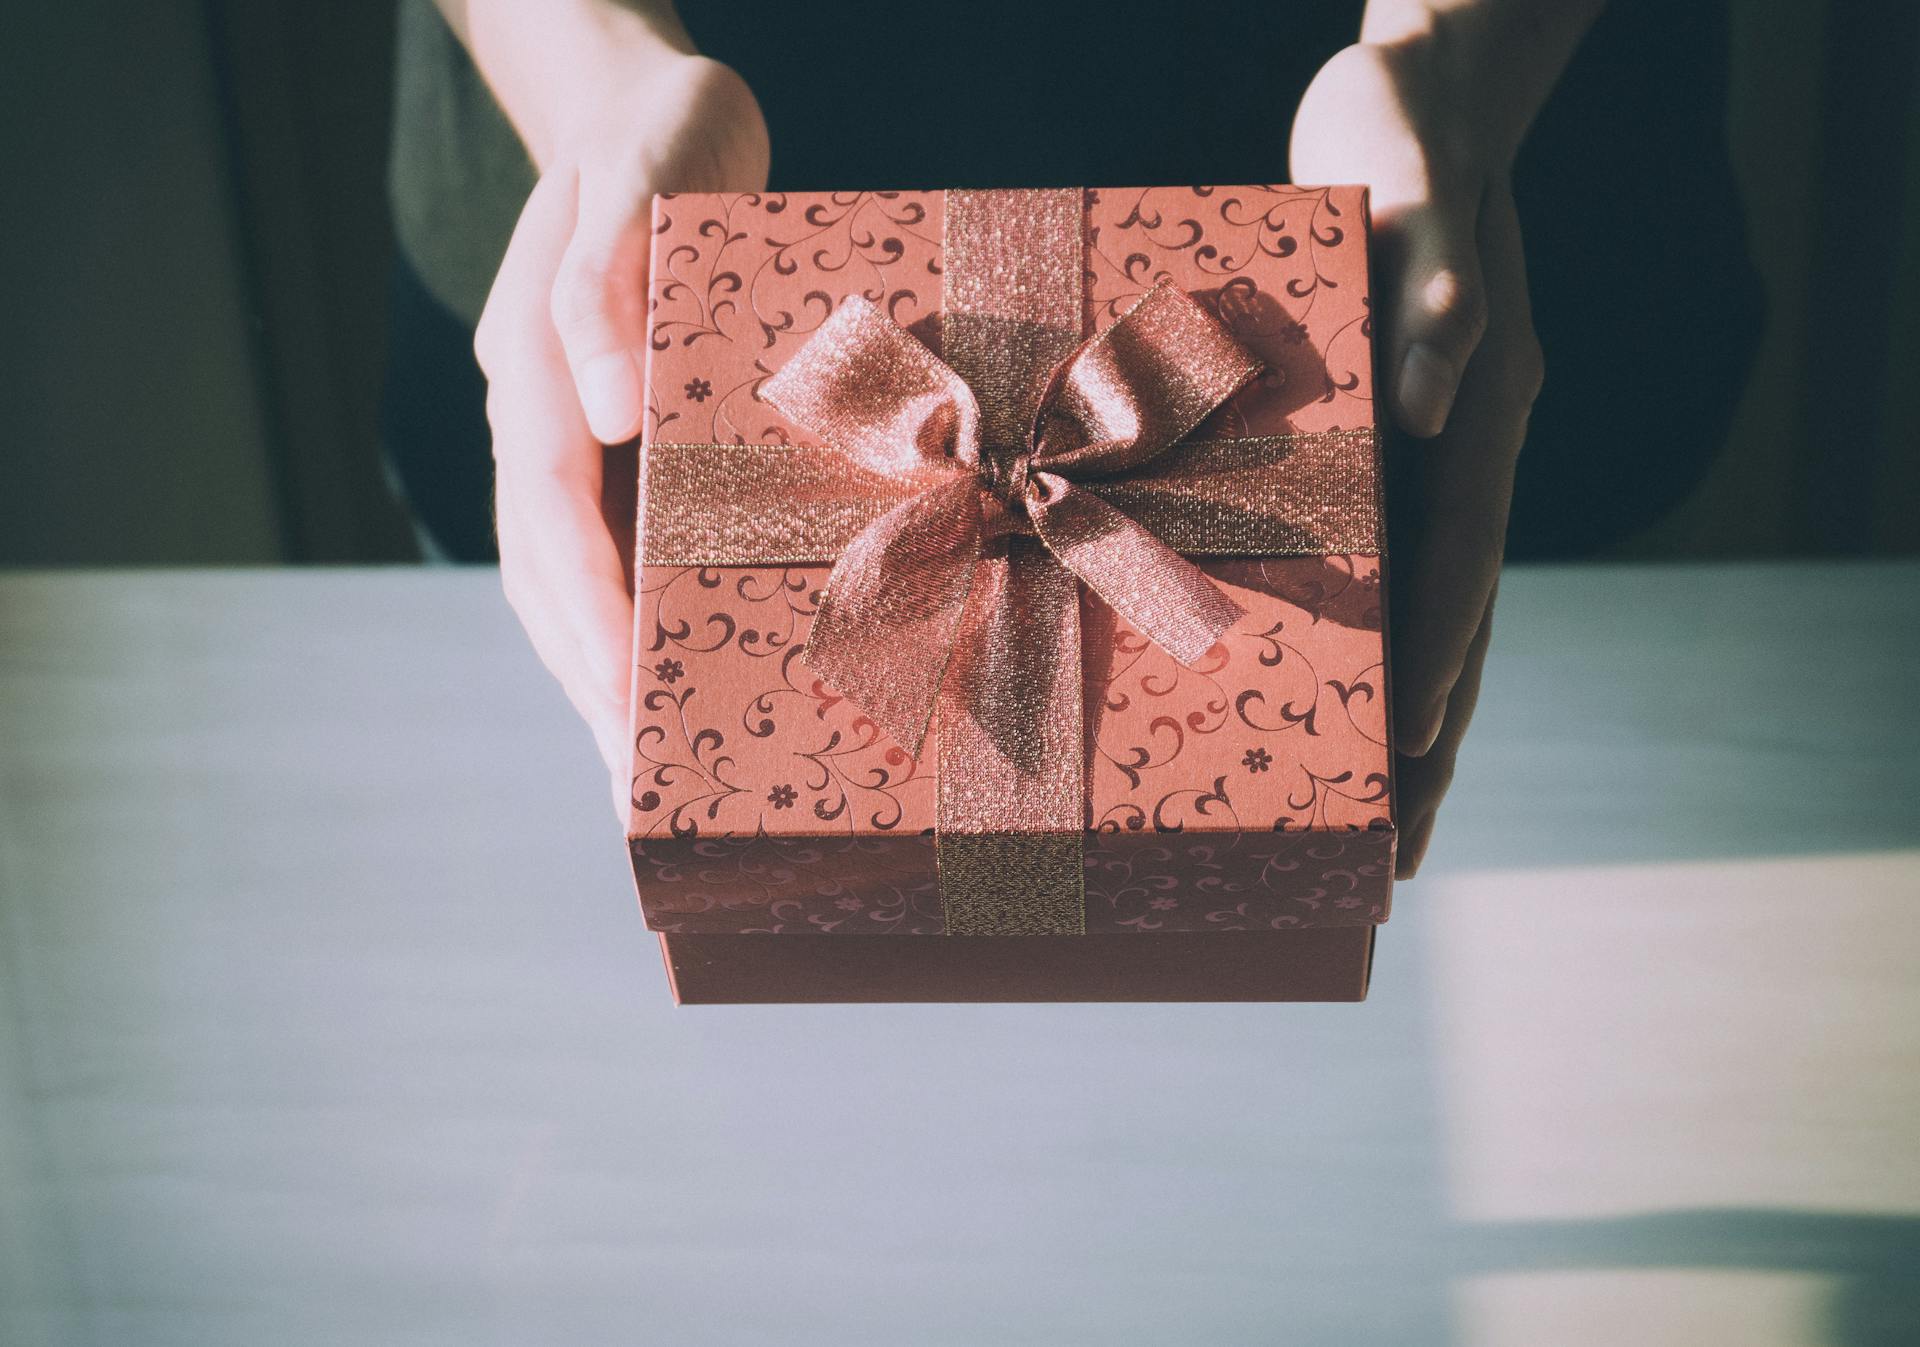 Una persona sostiene una caja de regalo | Foto: Pexels